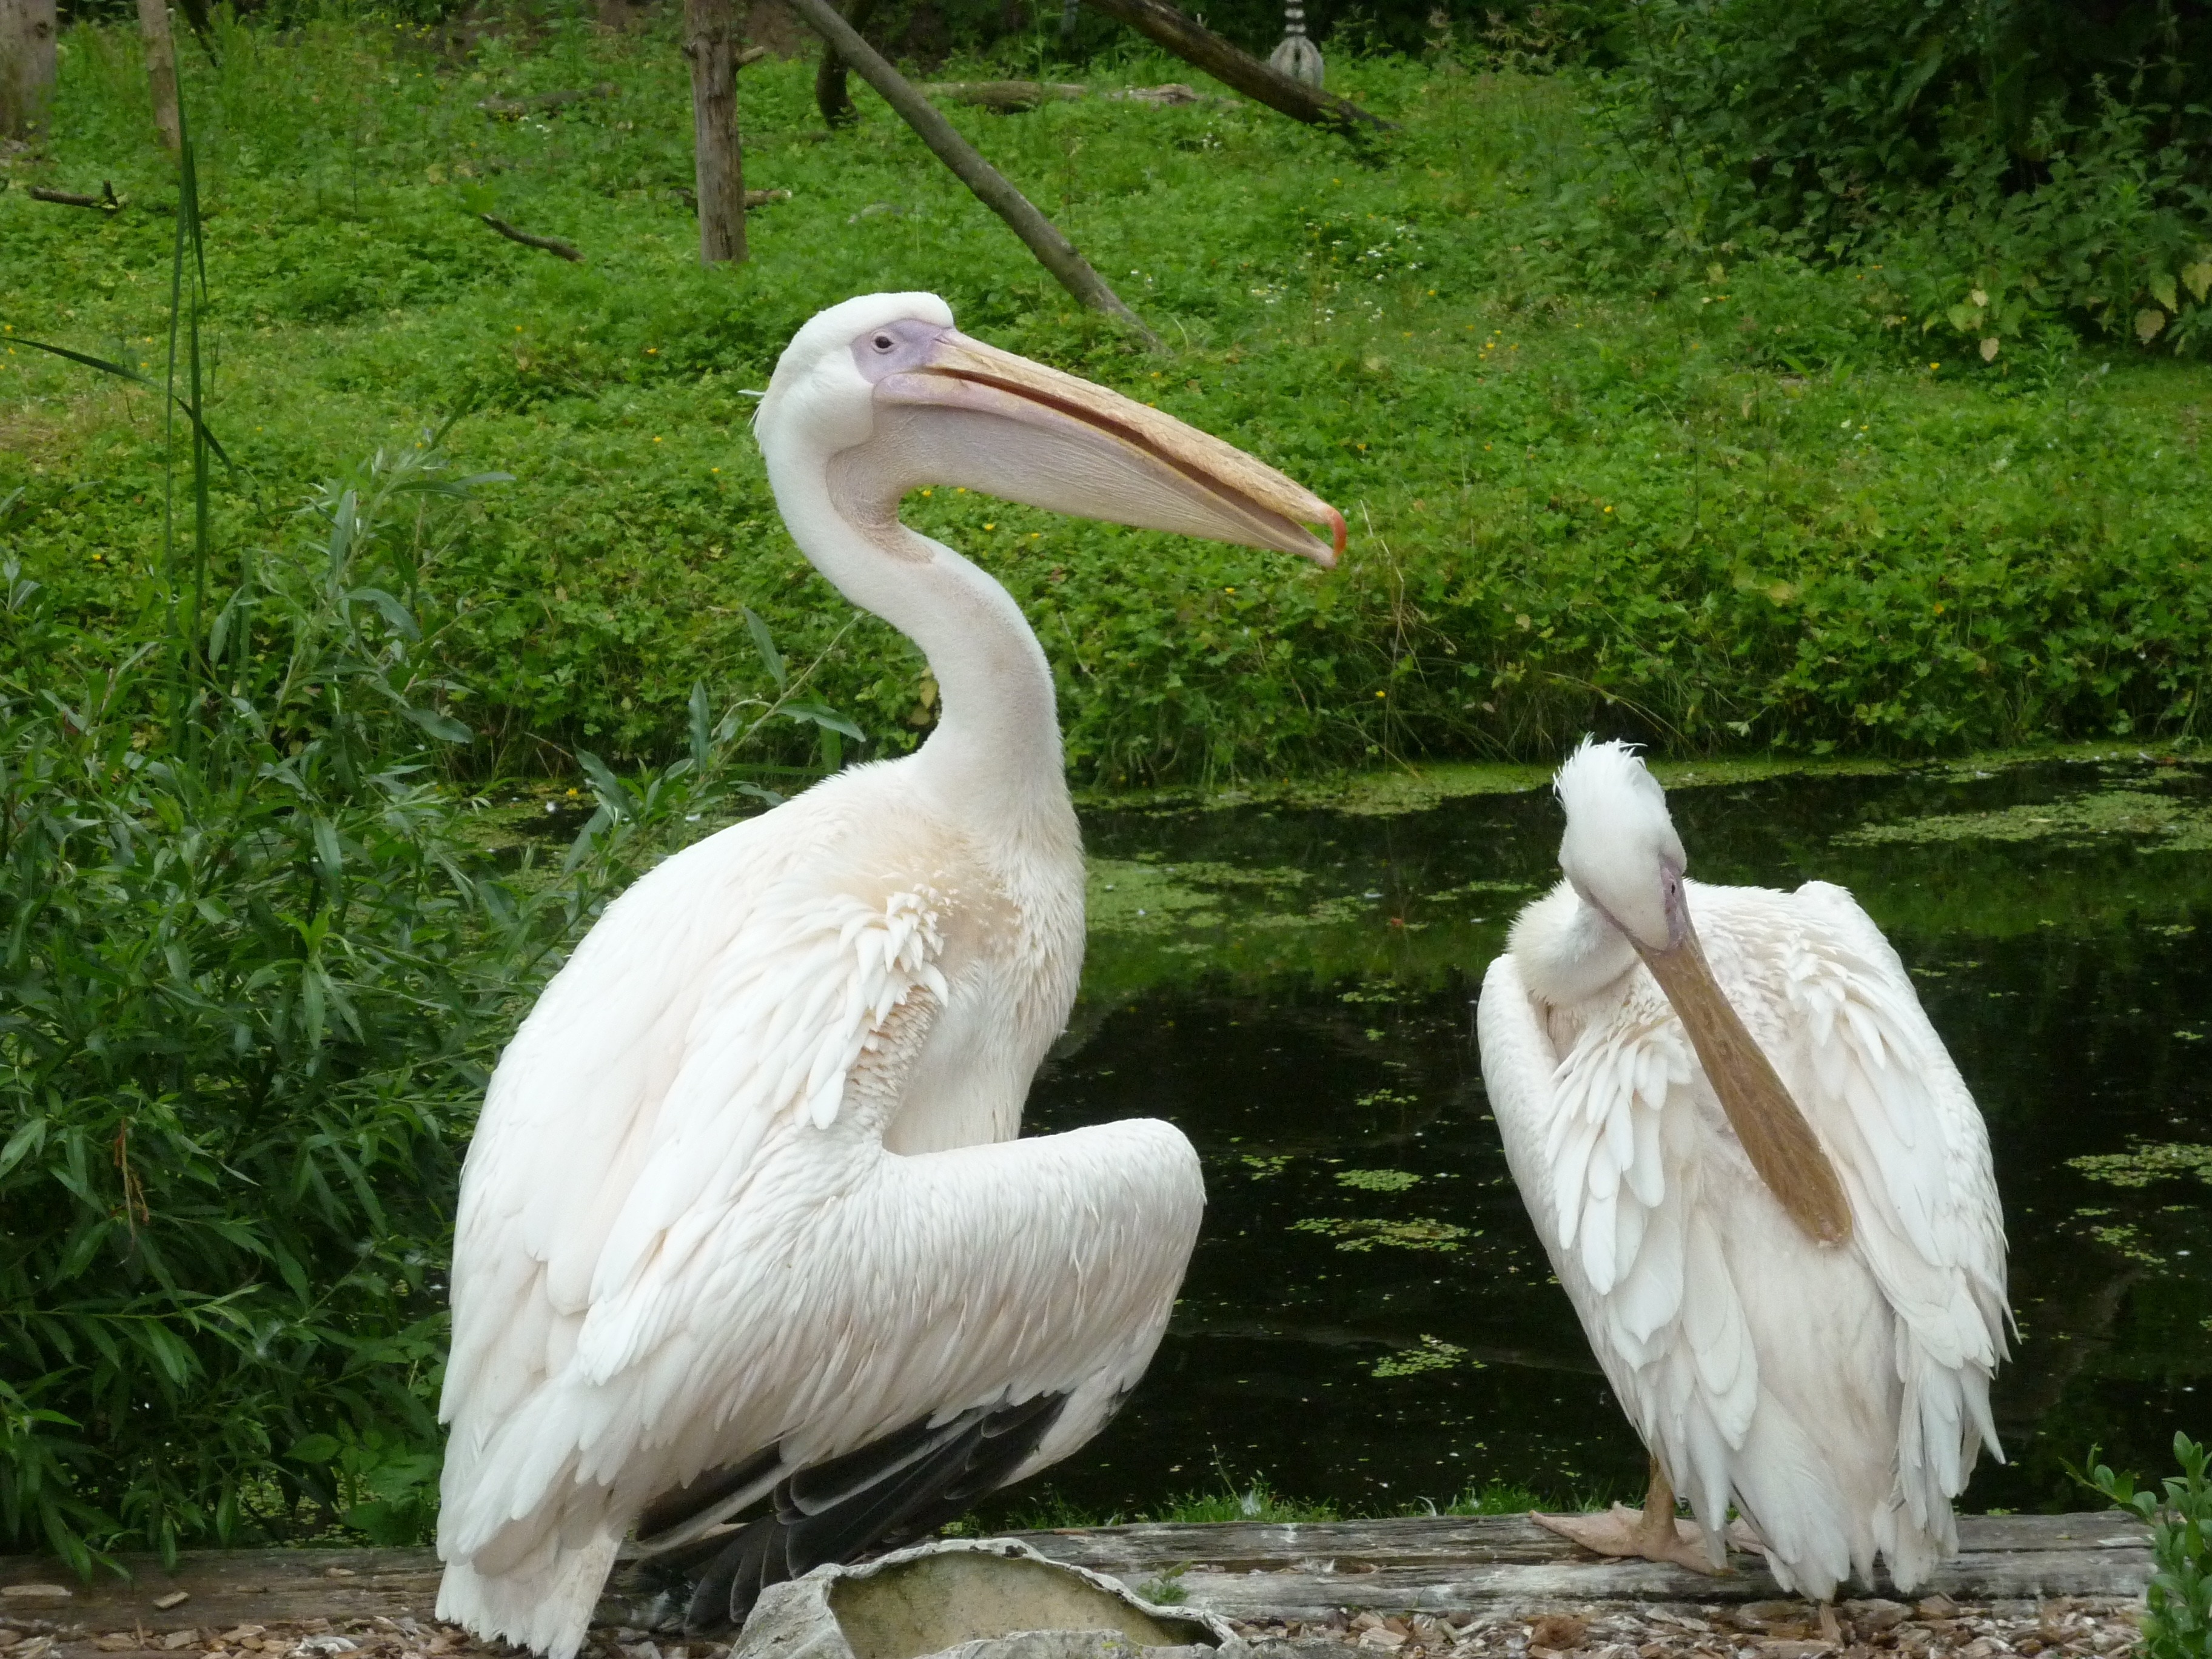 2 pelicans